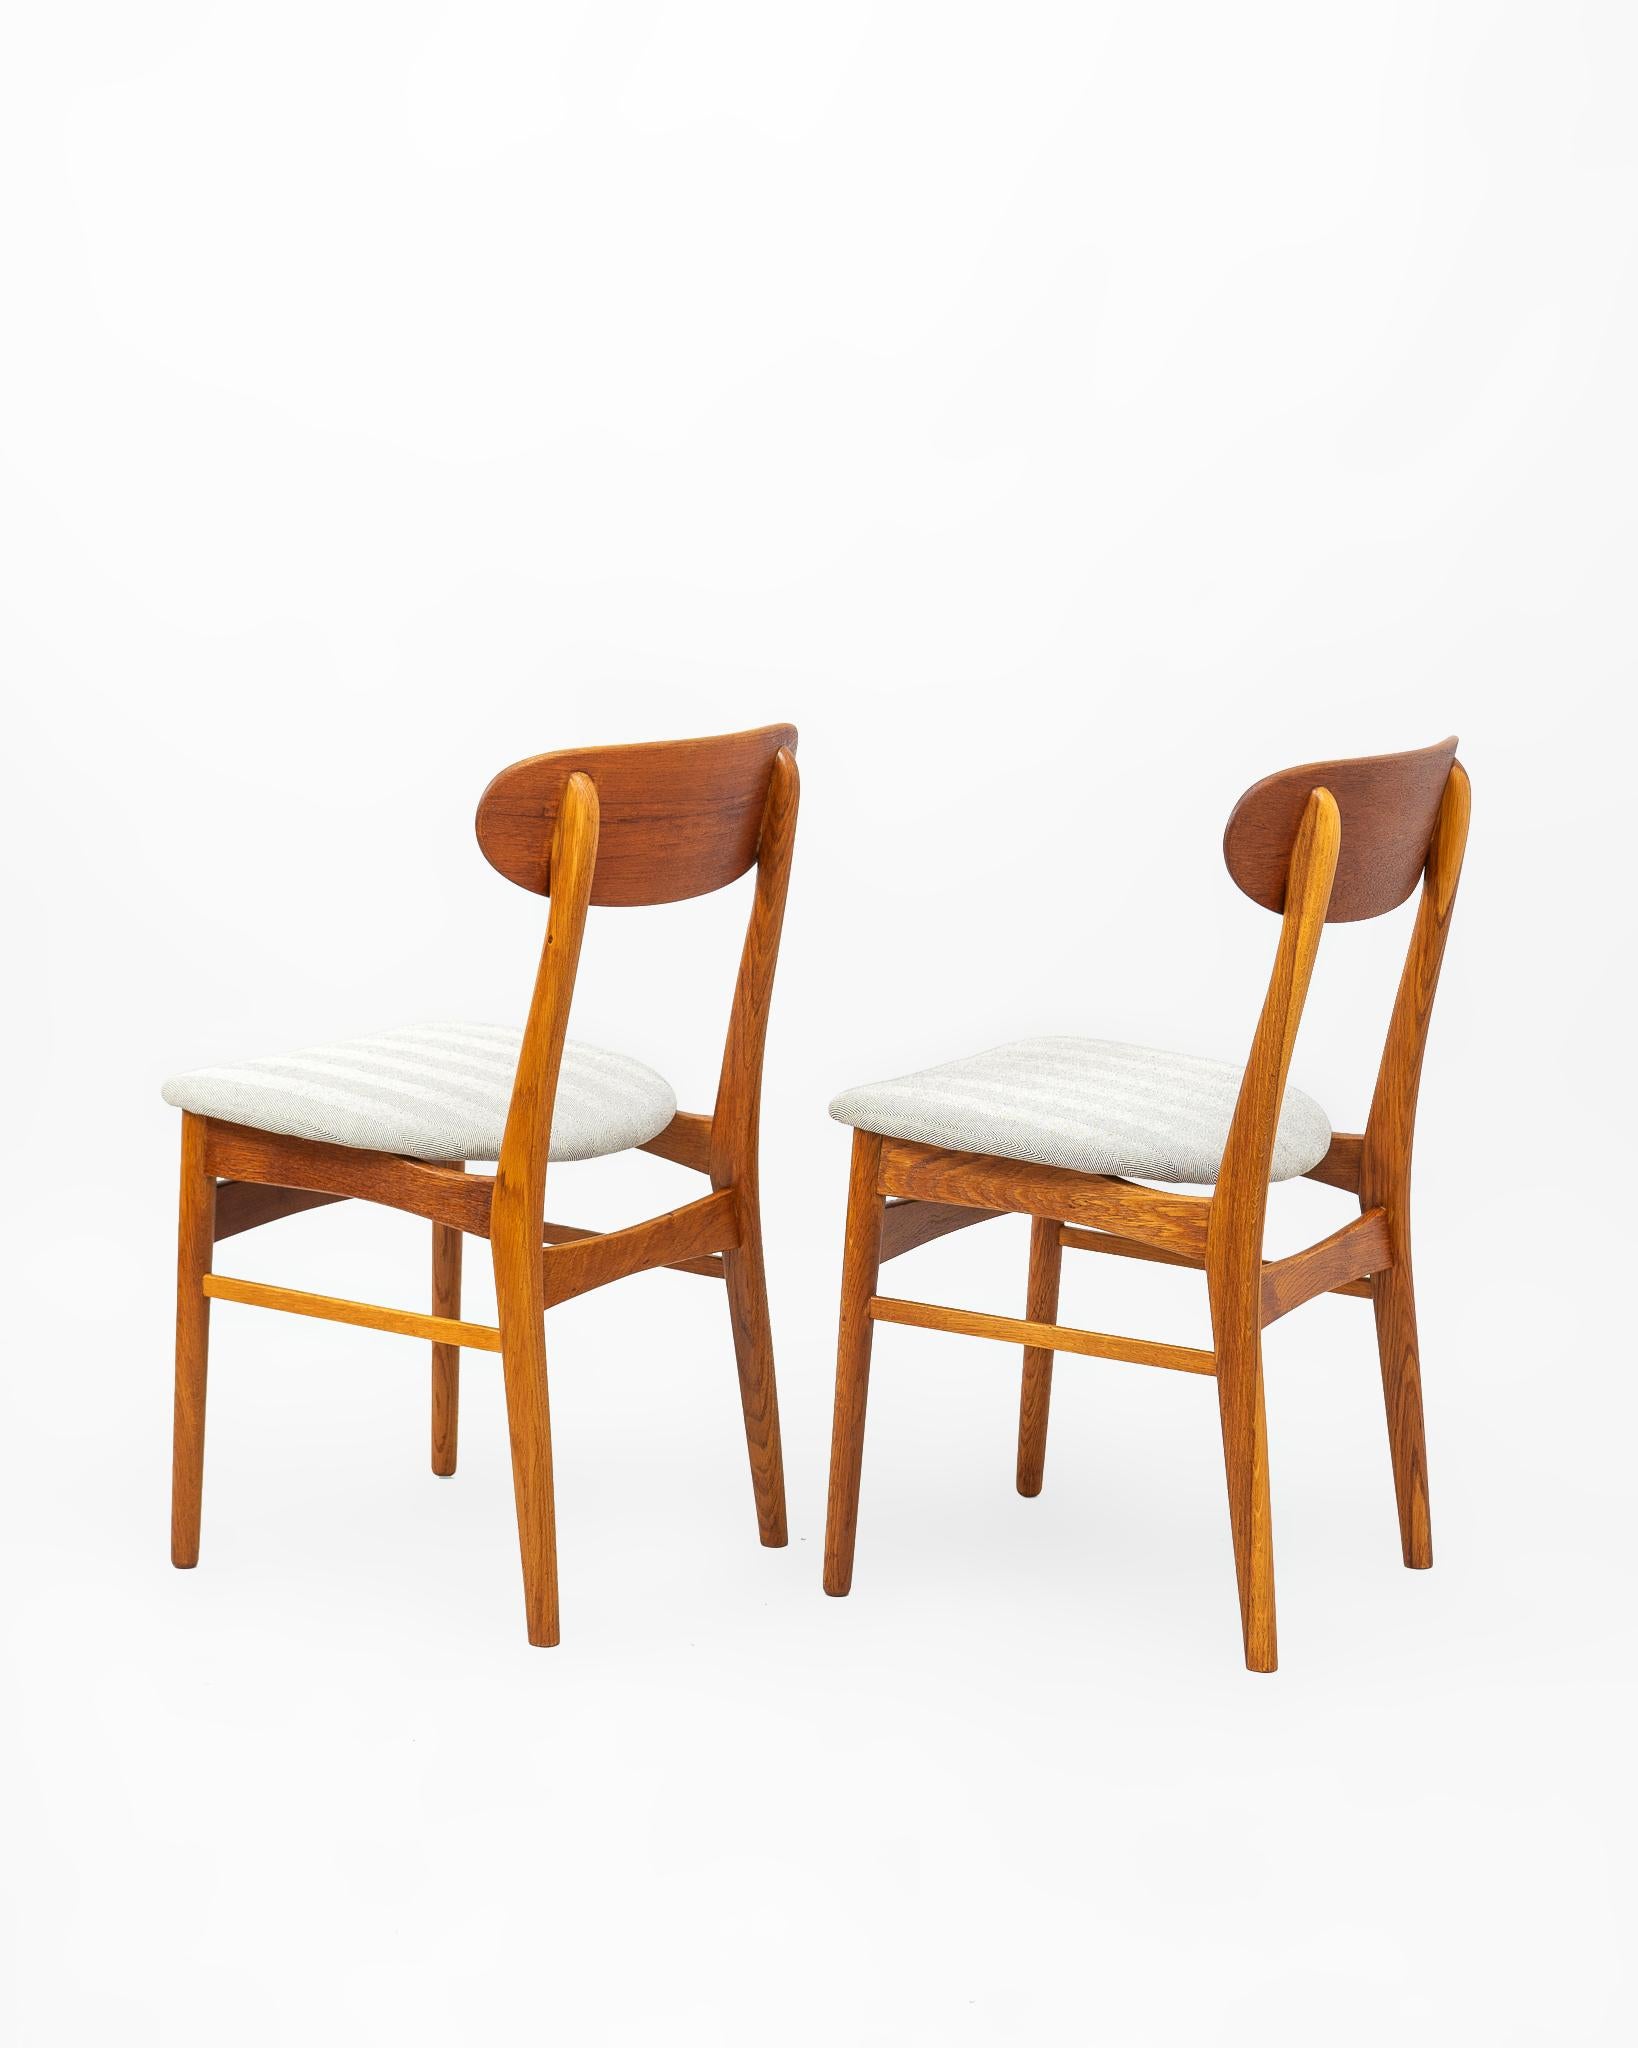 Pareja de sillas en madera de teca fabricadas en Maderae en la década de 1960's. La structure est construite en madera maciza de teca avec un asiento tapizado en tejido de telar tradicional en espiga negra. L'appareil est fabriqué en teck massif